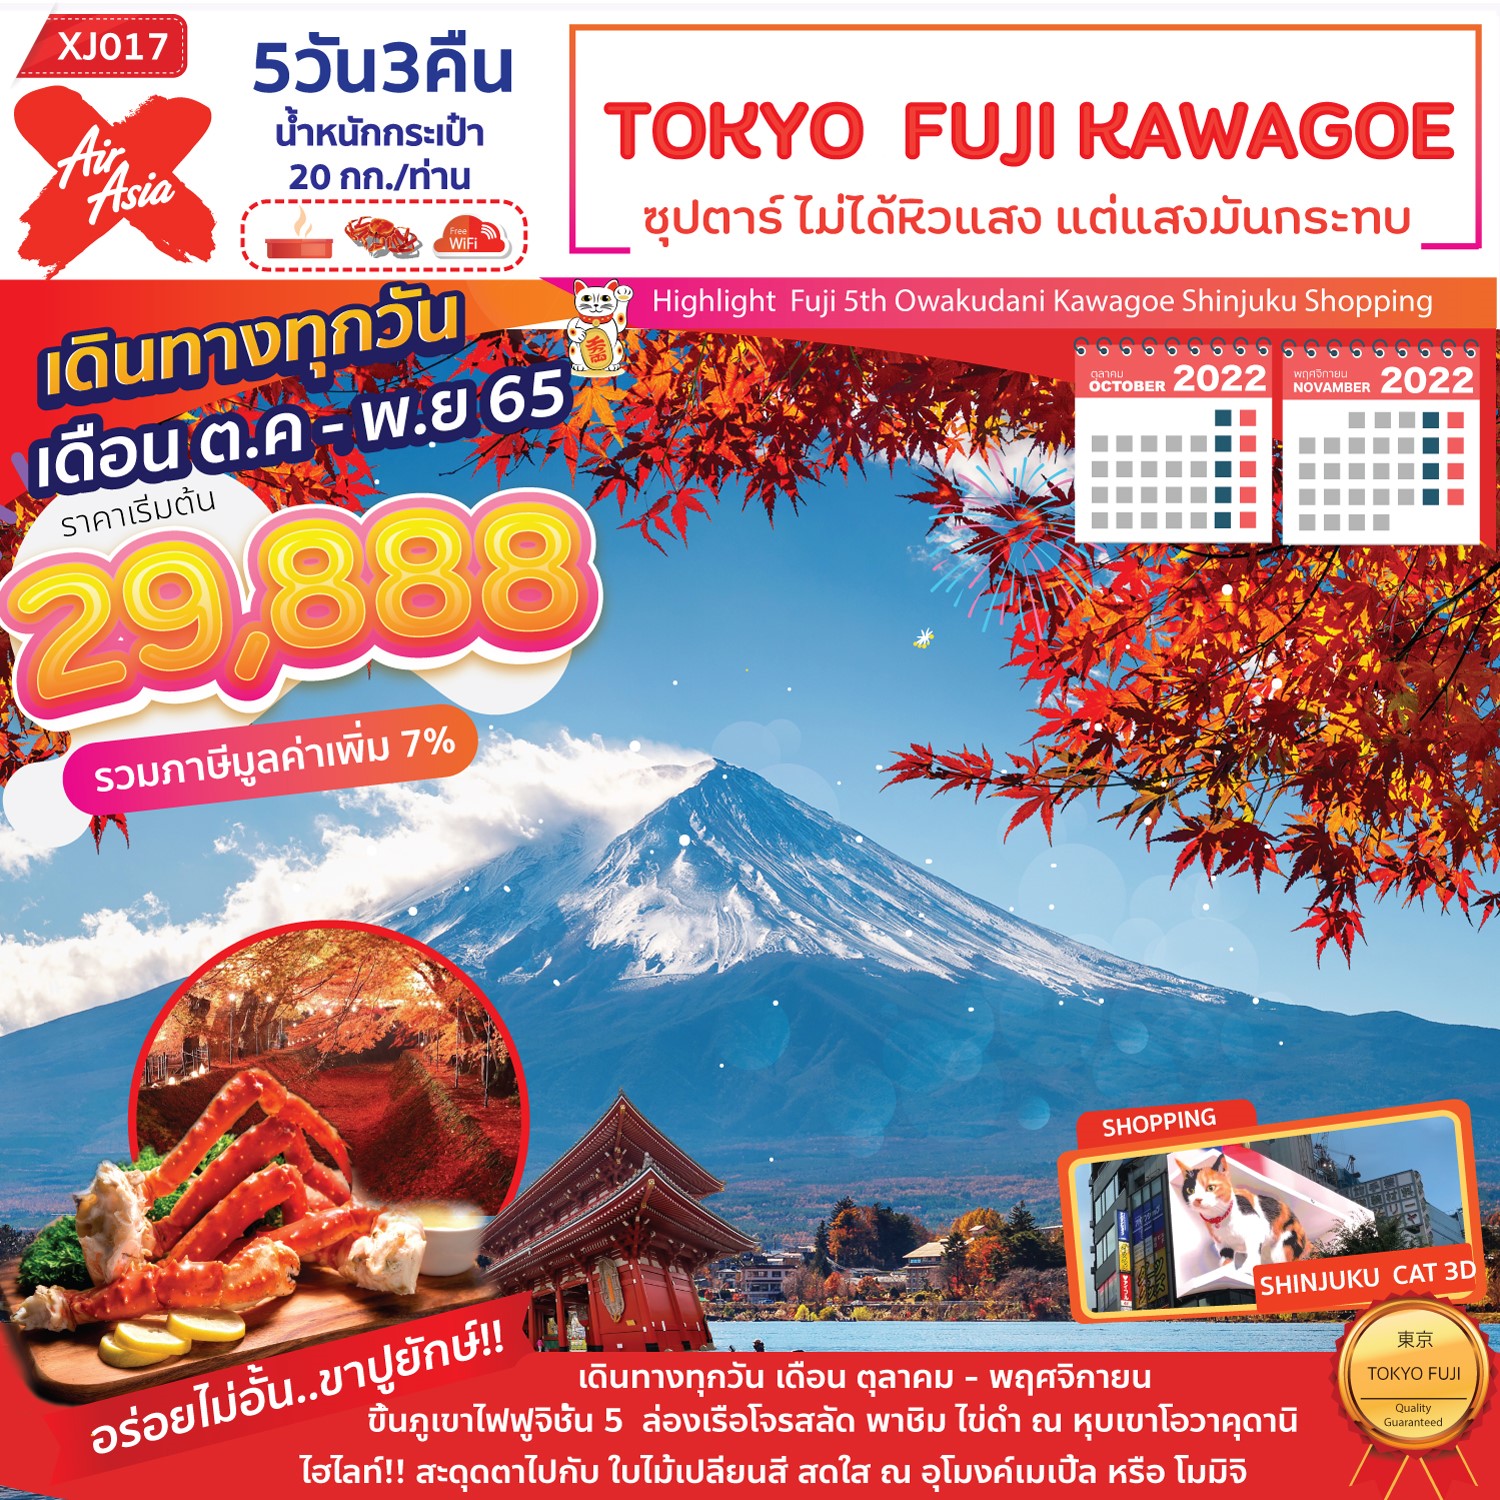 ทัวร์ญี่ปุ่น : TOKYO FUJI KAWAGOE 5D3N (XJ)(copy)